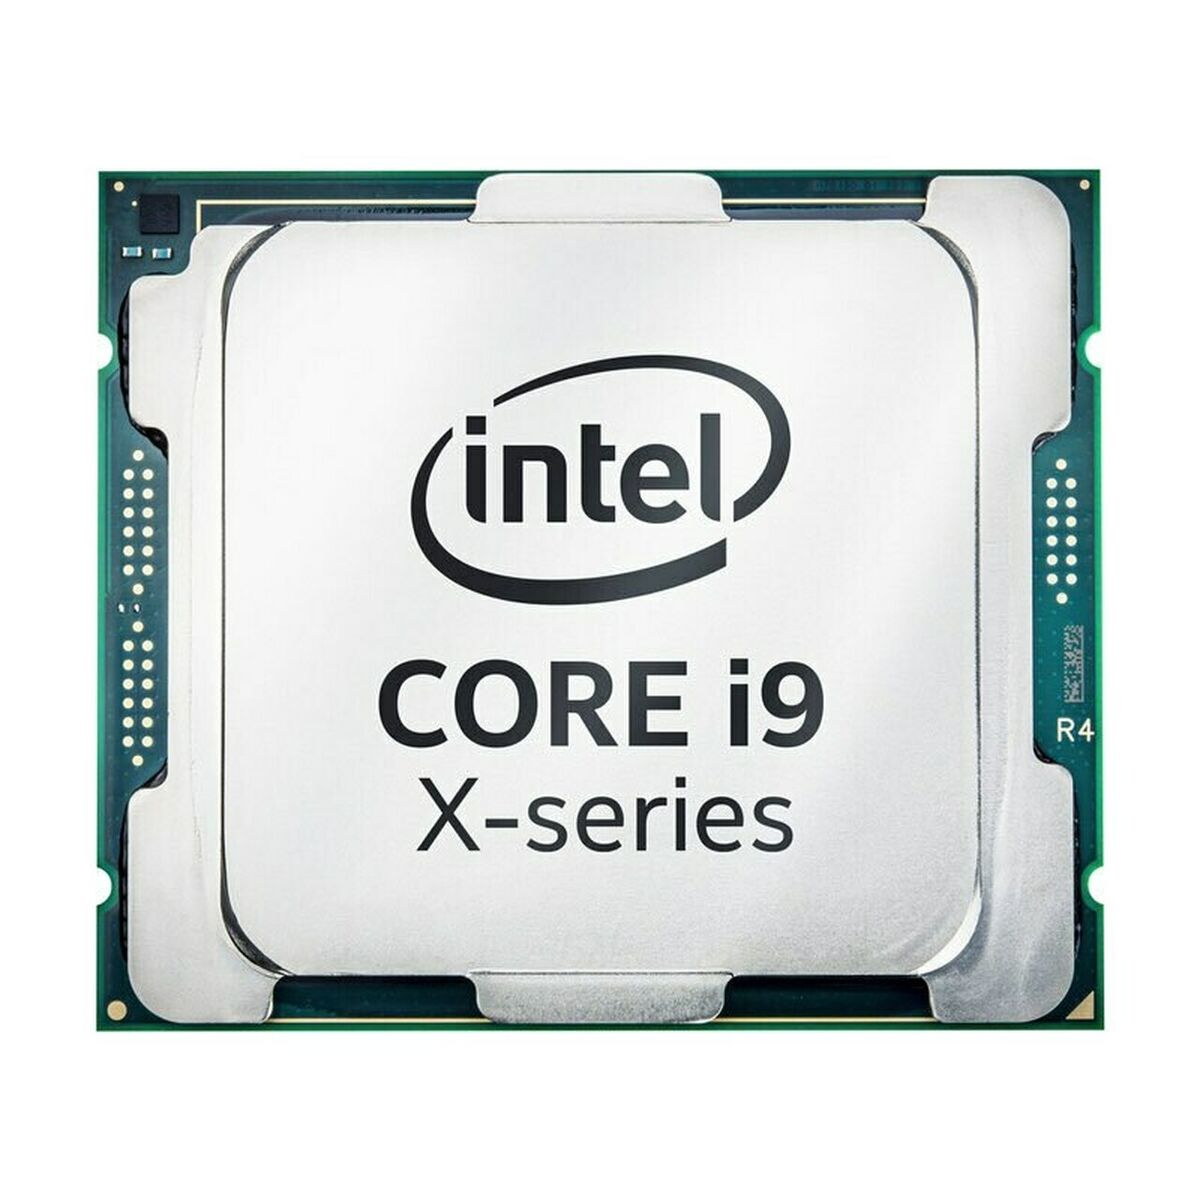 Intel 5 series. Xeon w- 1290p. Процессор Intel Core i9-10940x OEM. Процессор Intel Core i9-11900kf OEM. Процессор Intel Core i9-10940x LGA 2066 (OEM).